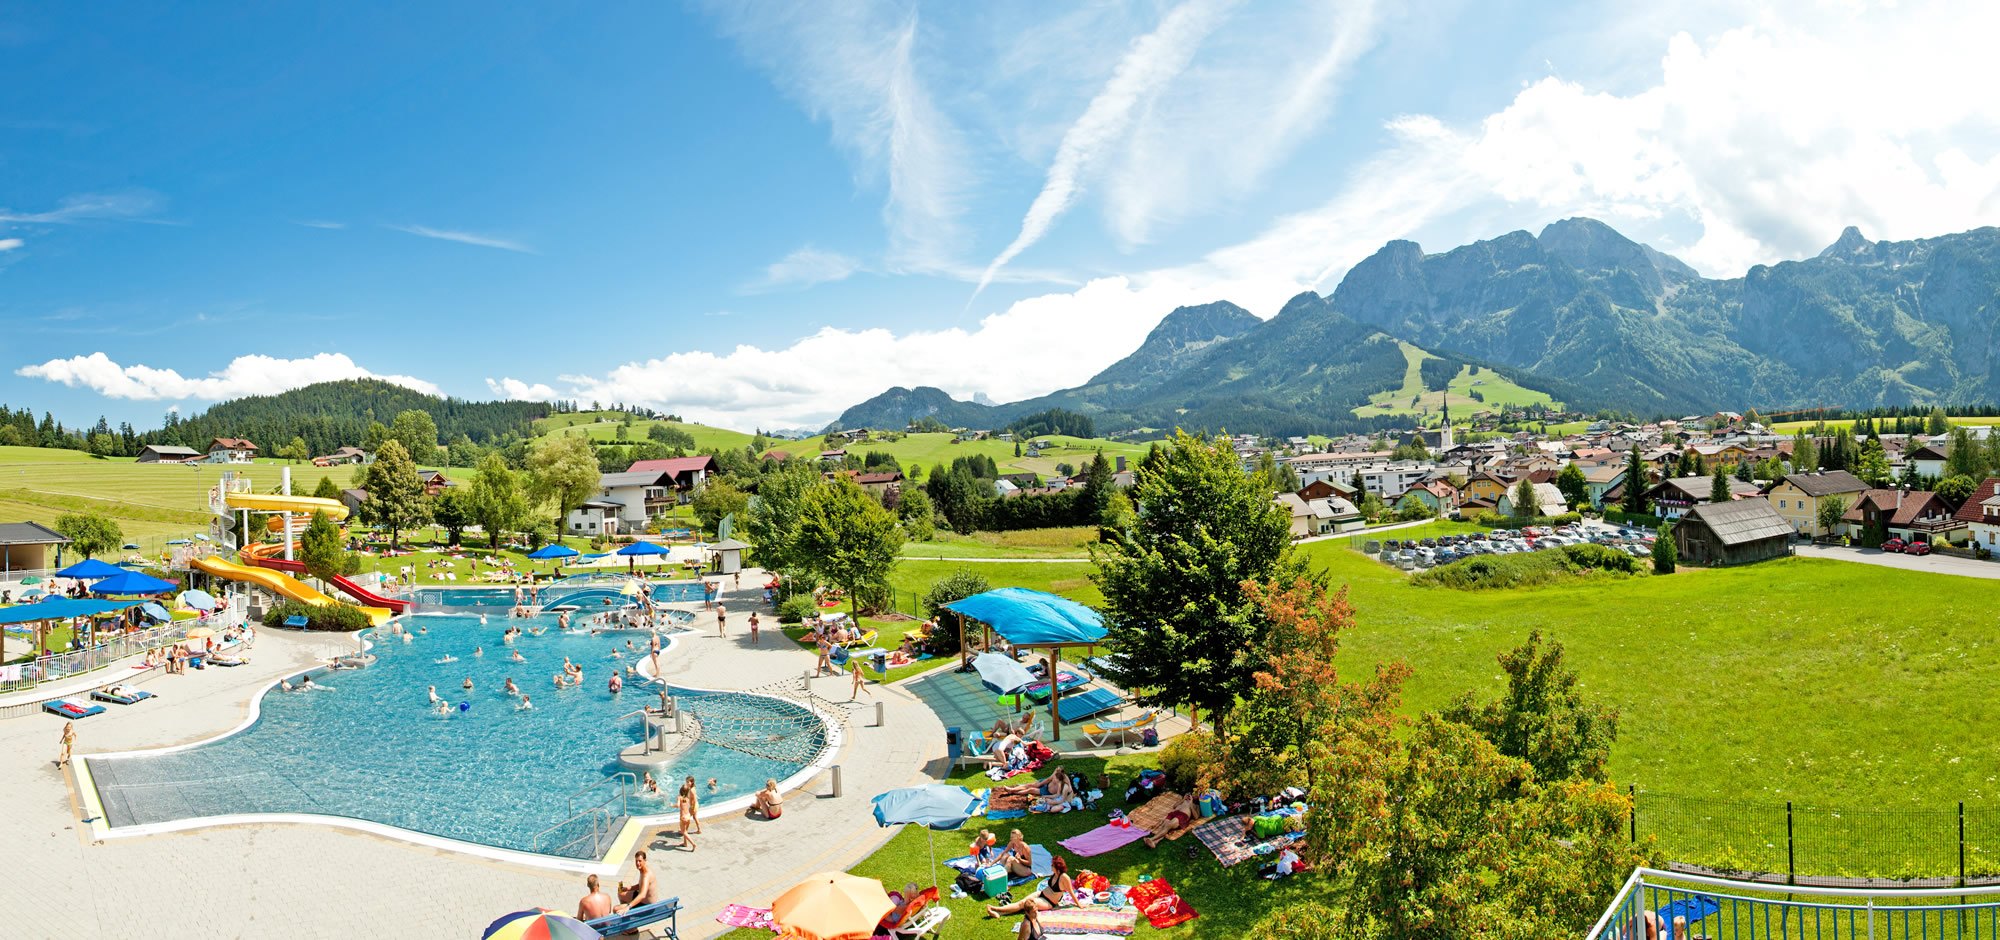 Sommerurlaub in Abtenau - Blick auf das Freischwimmbad und auf den Ort